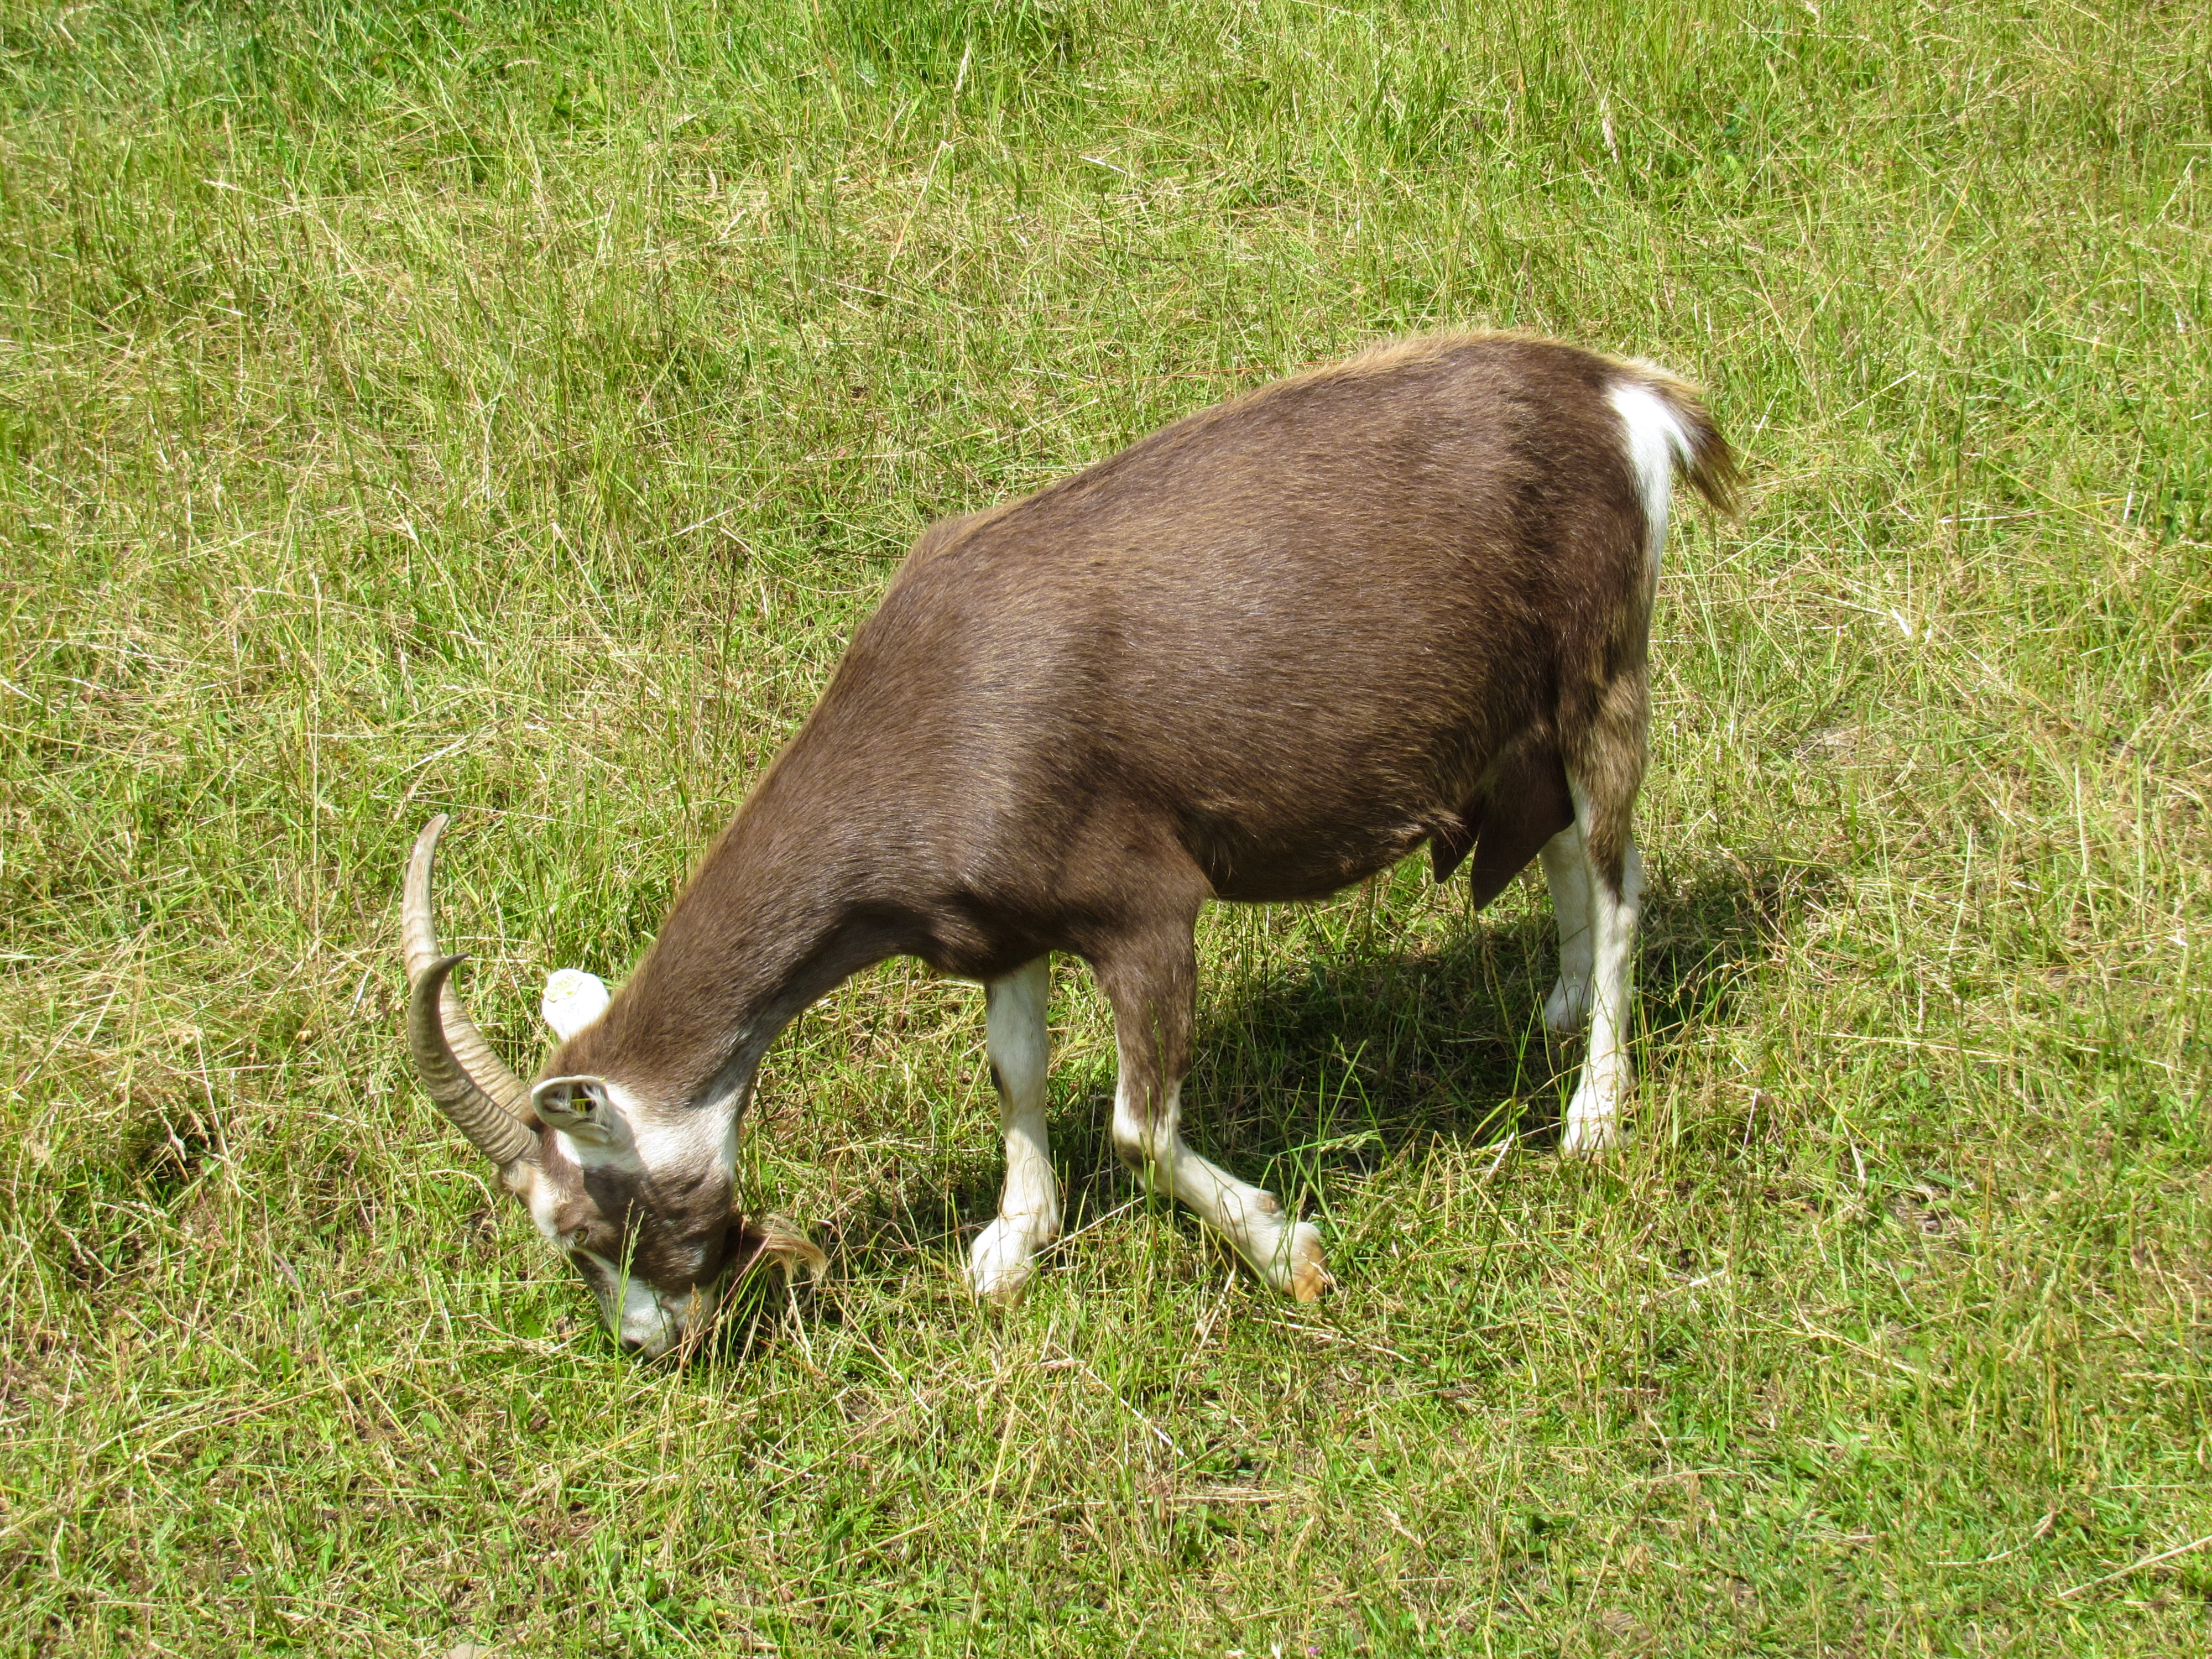 Goat_Eating_Grass.jpg